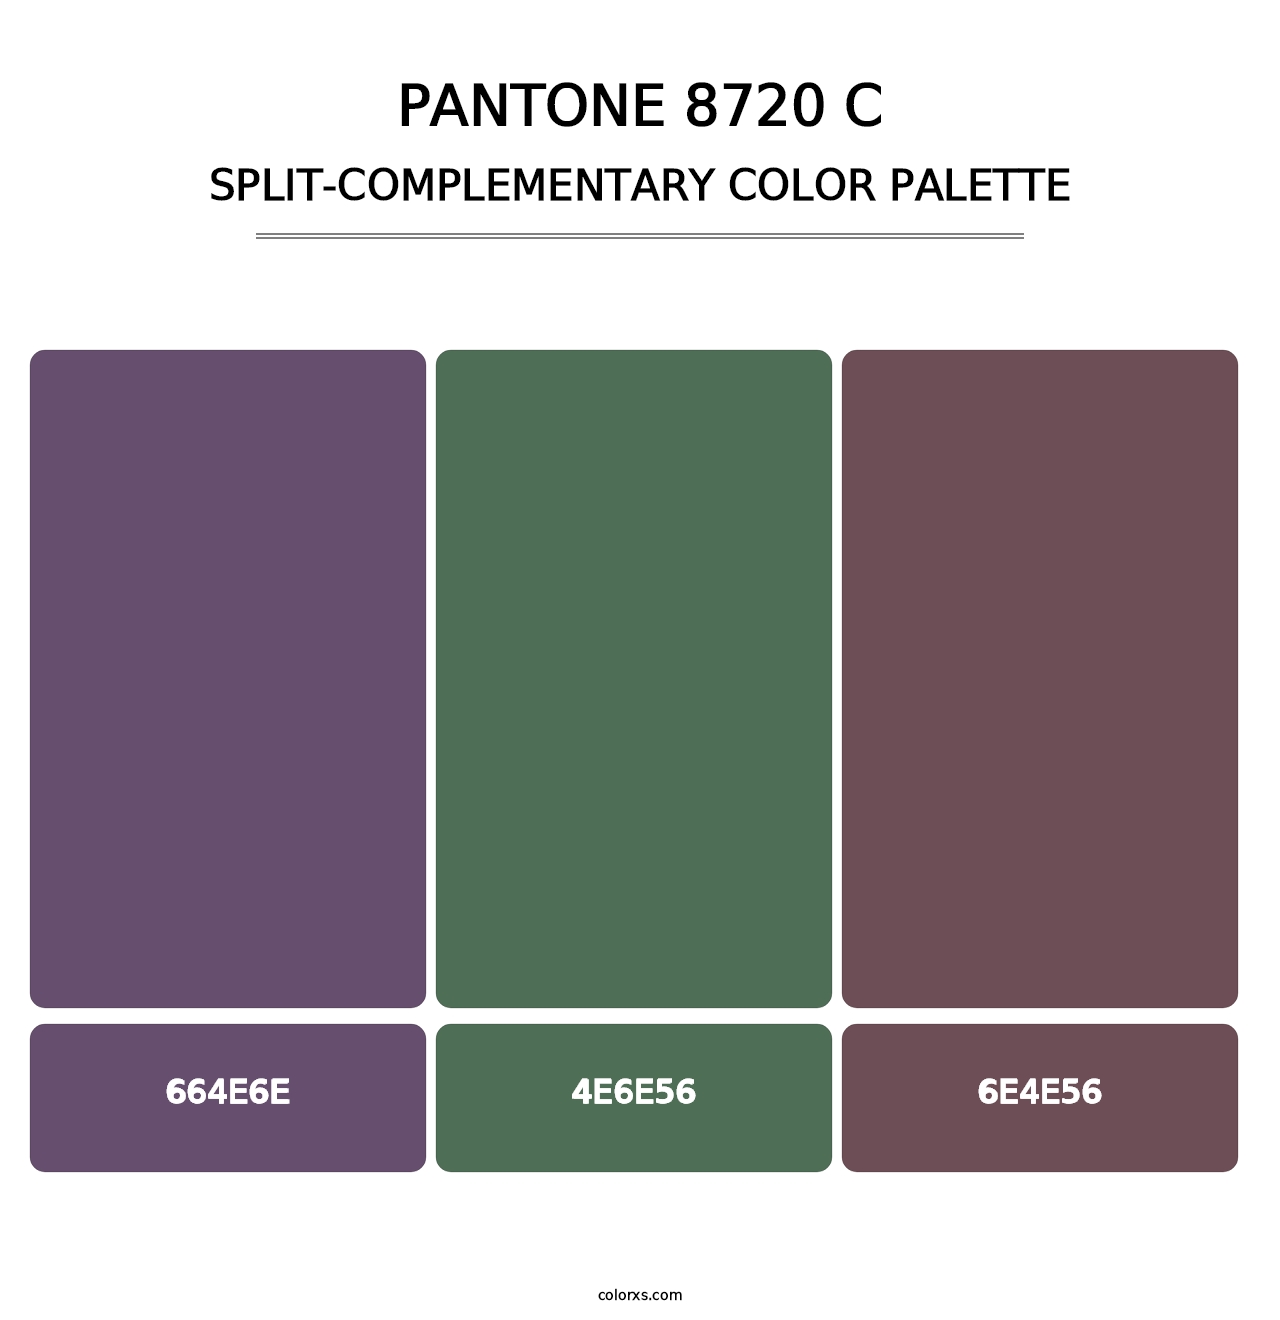 PANTONE 8720 C - Split-Complementary Color Palette